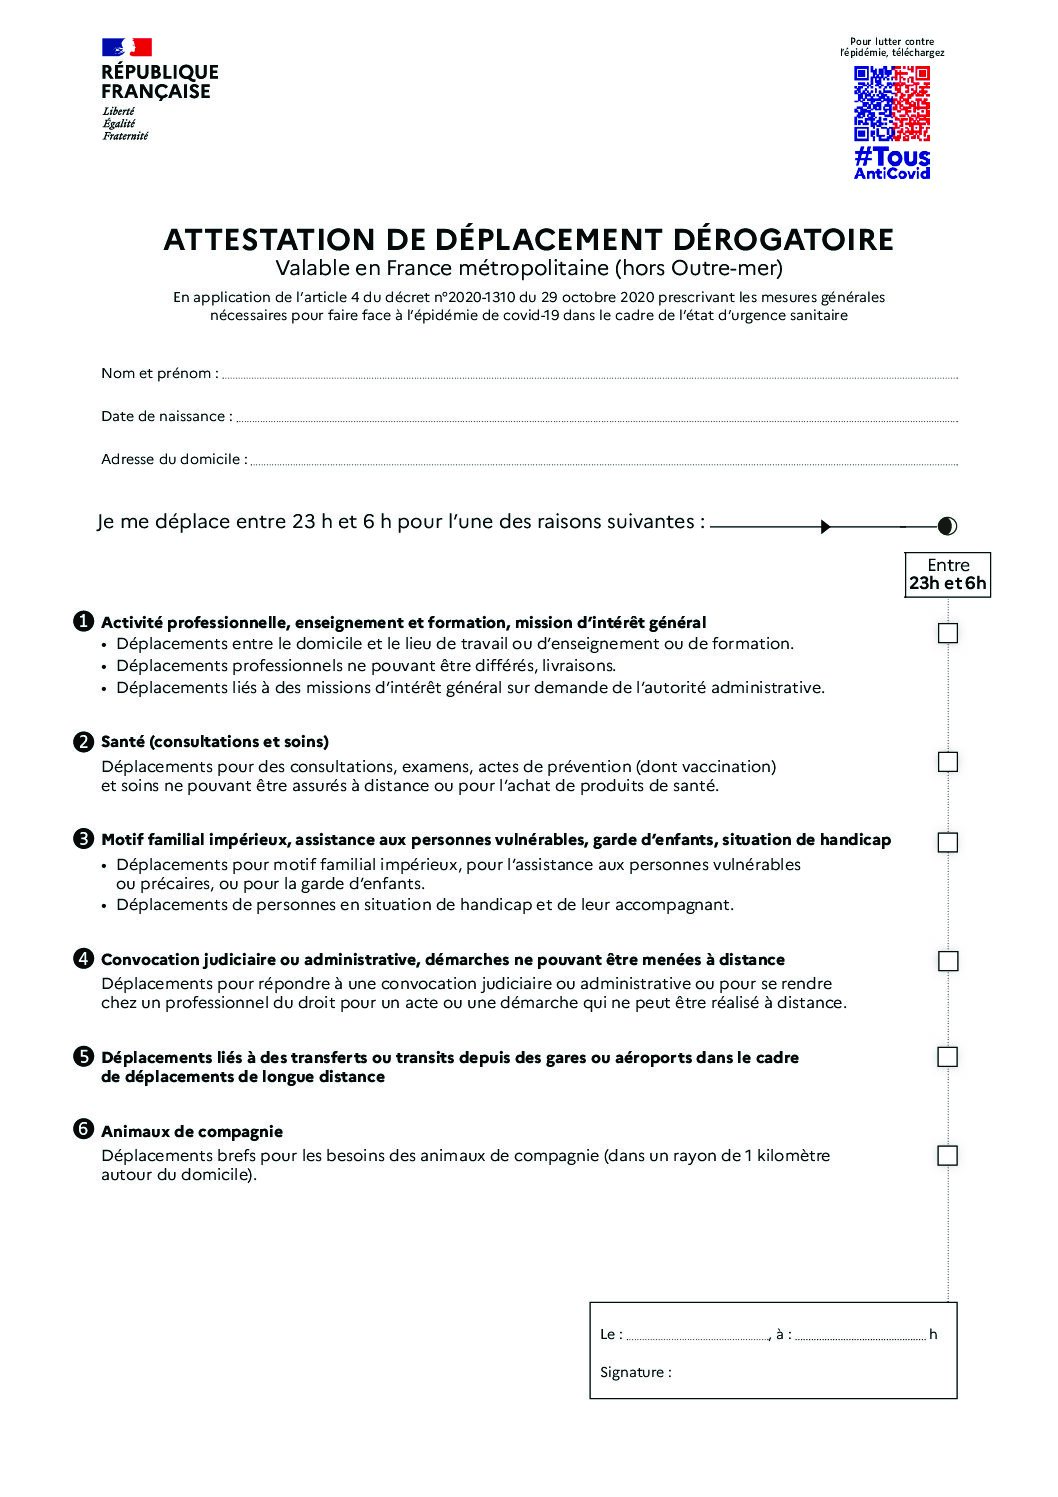 09 06 2021 attestation de deplacement derogatoire pdf